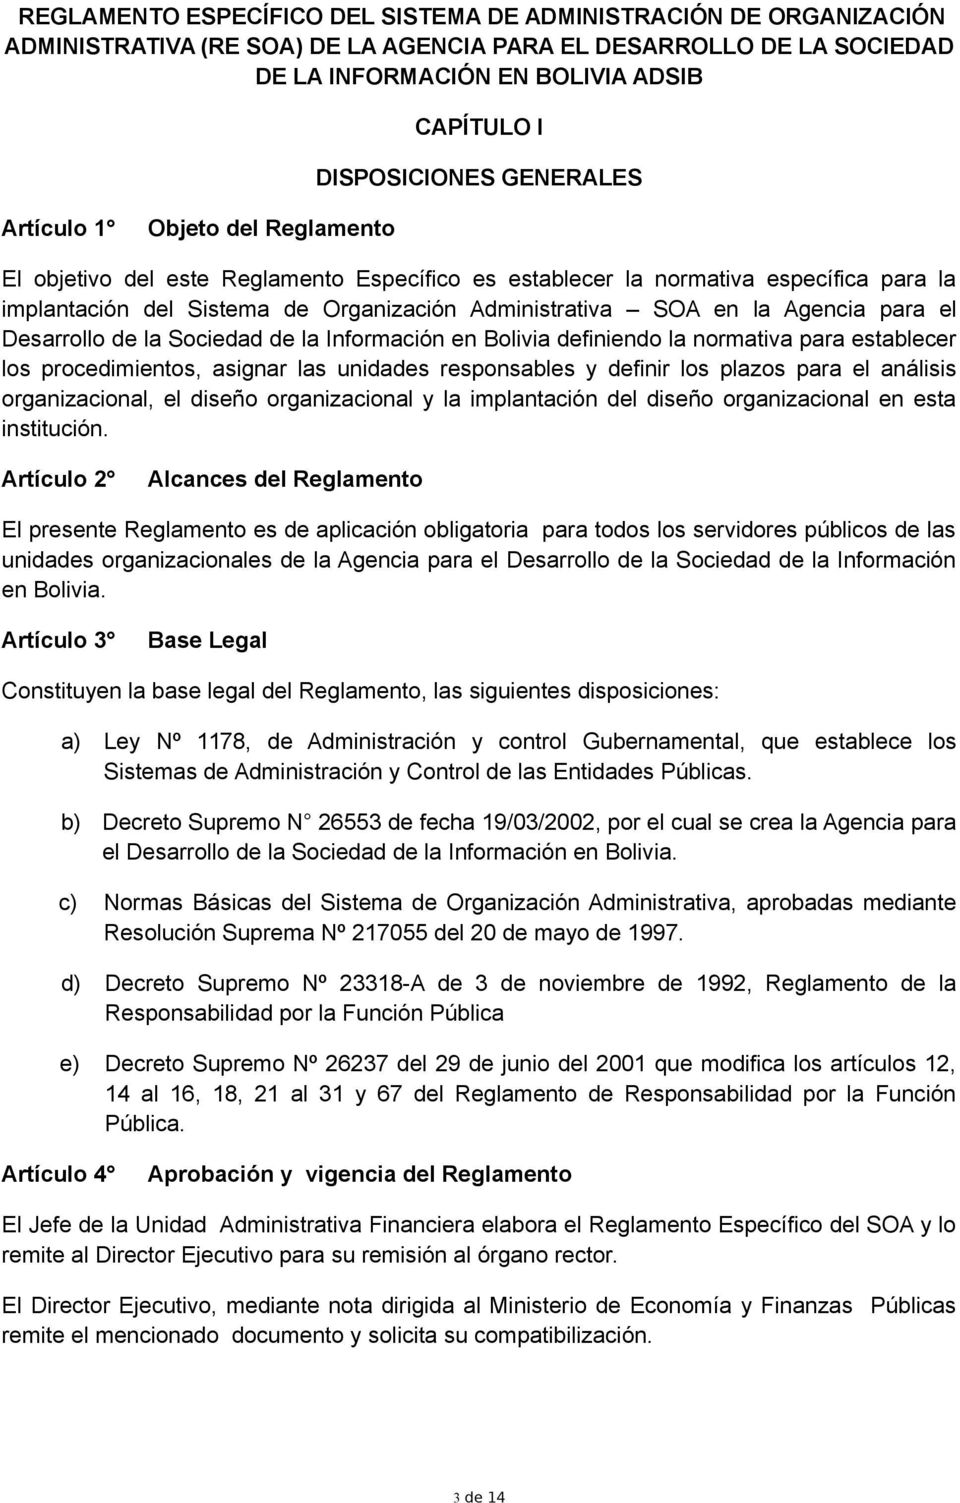 Agencia para el Desarrollo de la Sociedad de la Información en Bolivia definiendo la normativa para establecer los procedimientos, asignar las unidades responsables y definir los plazos para el